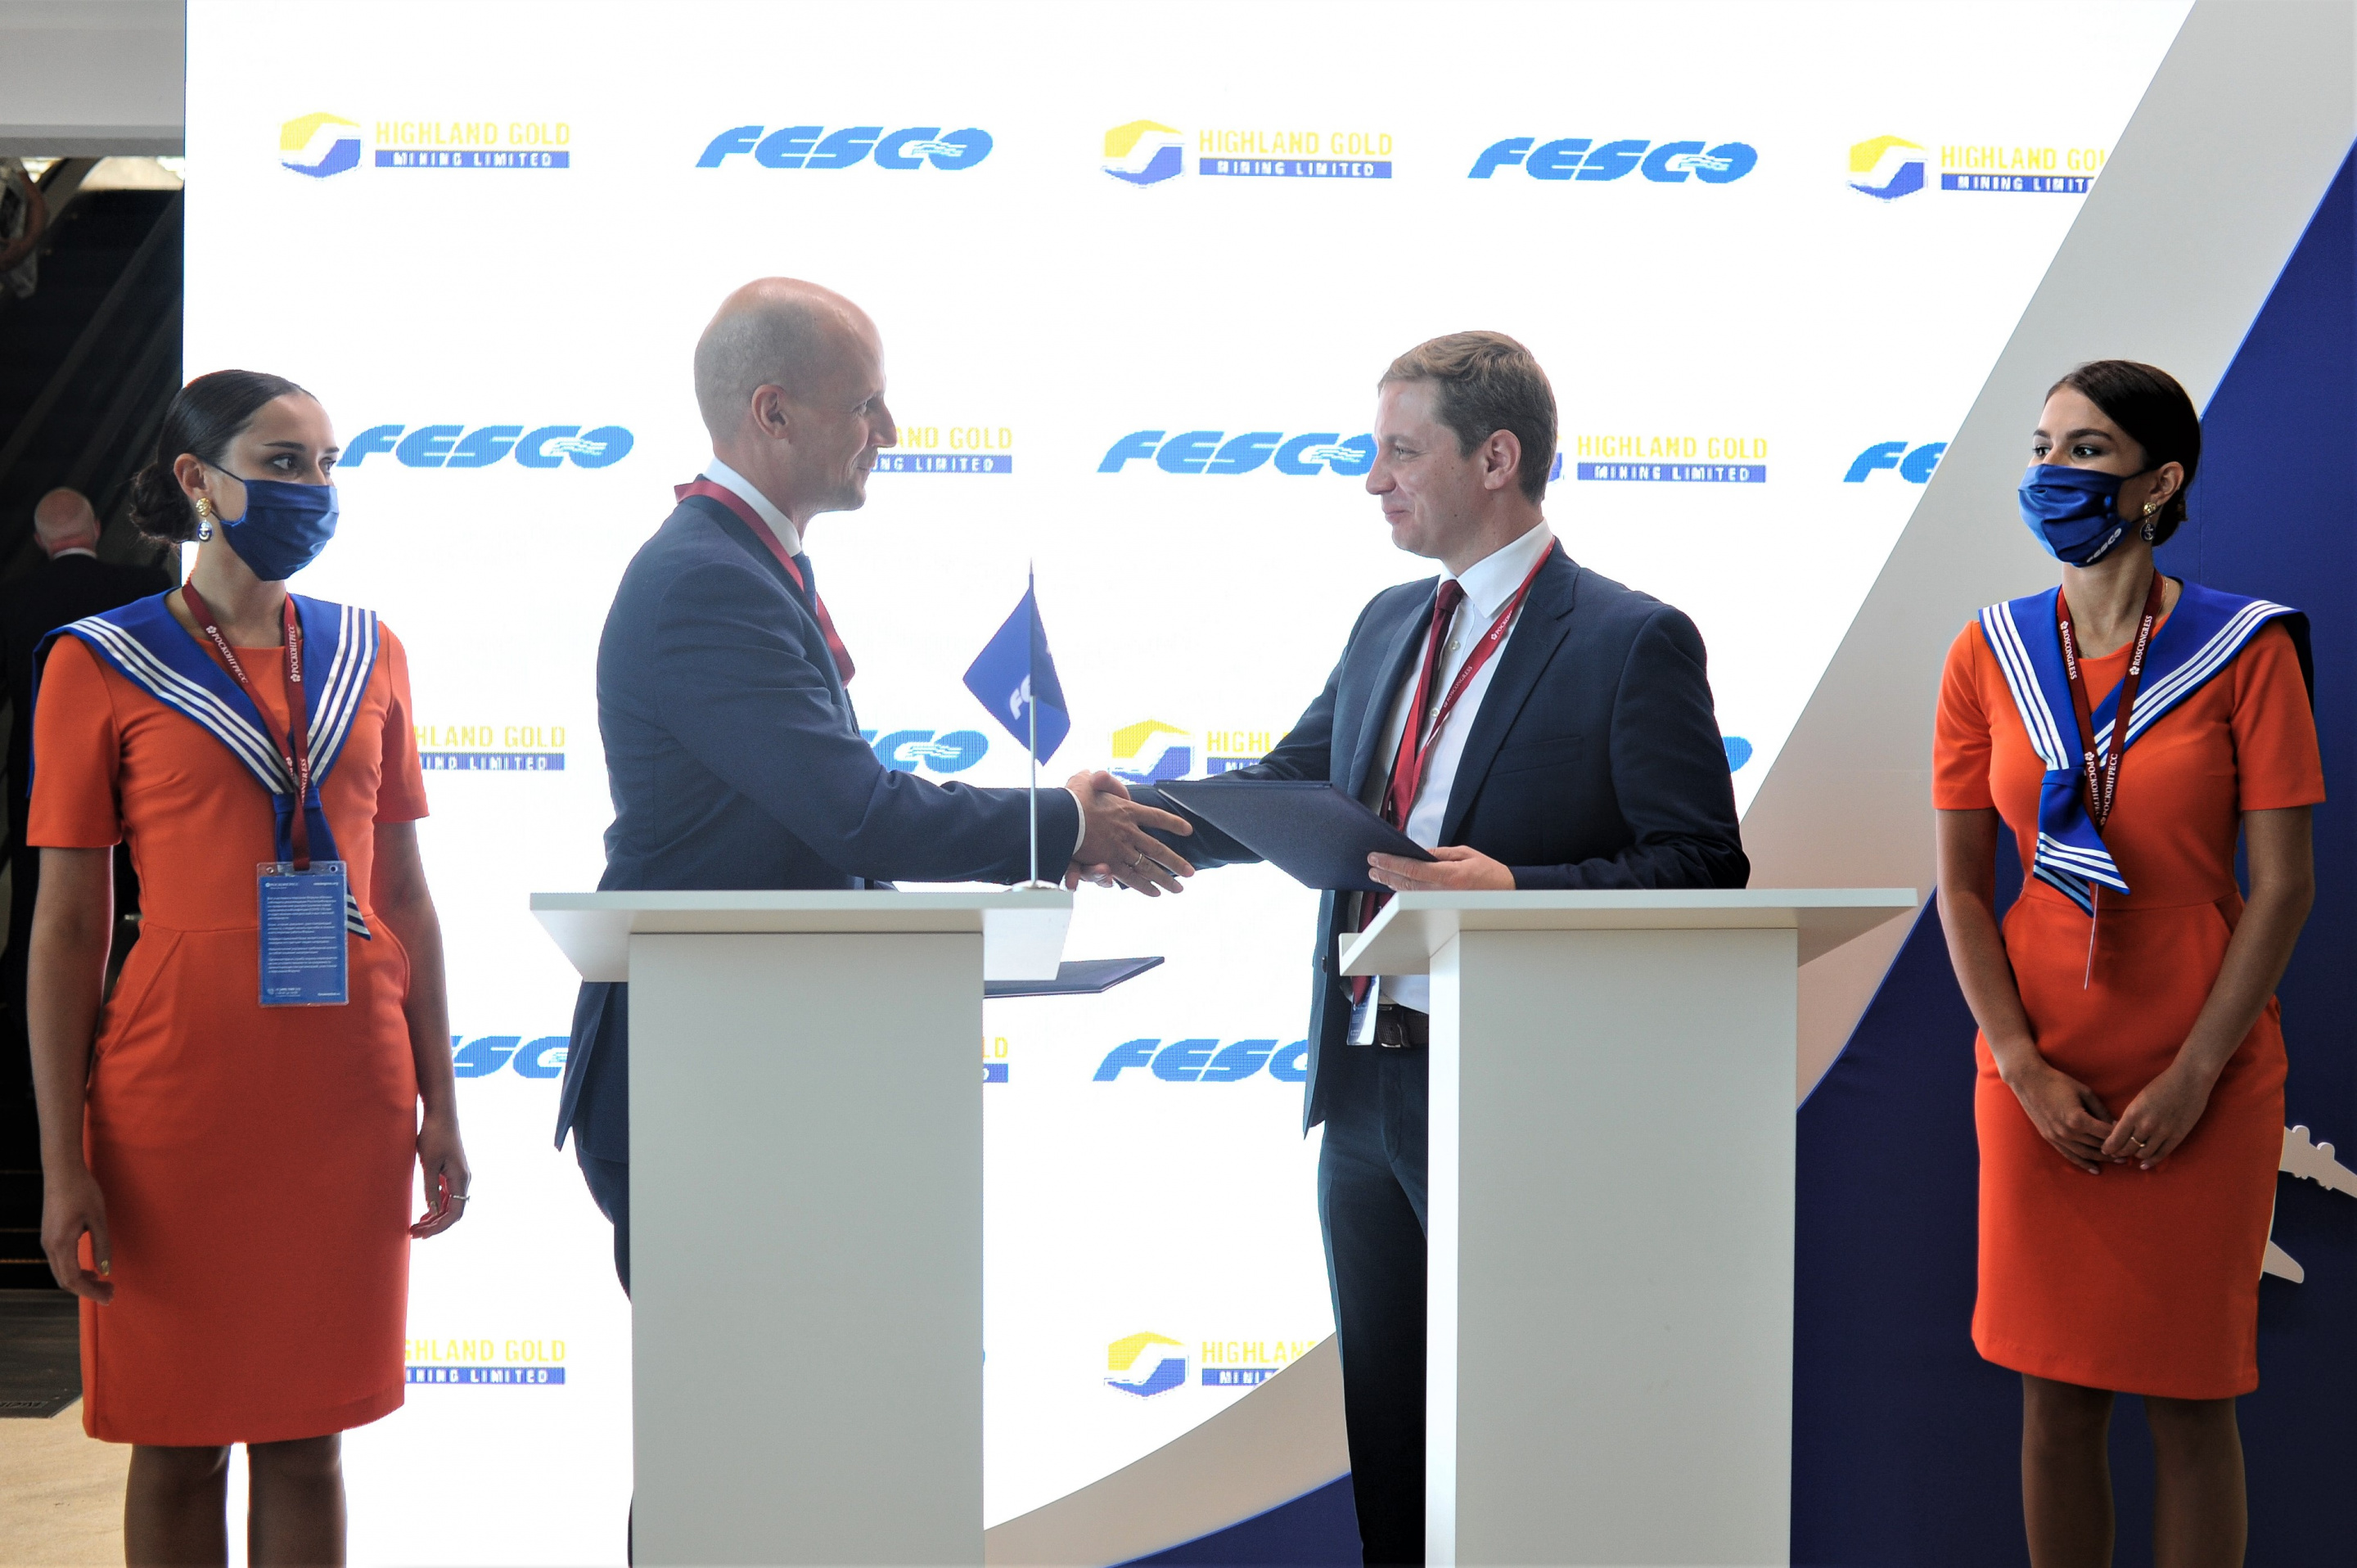 FESCO и Highland Gold договорились о сотрудничестве в сфере транспортно-логистического обслуживания